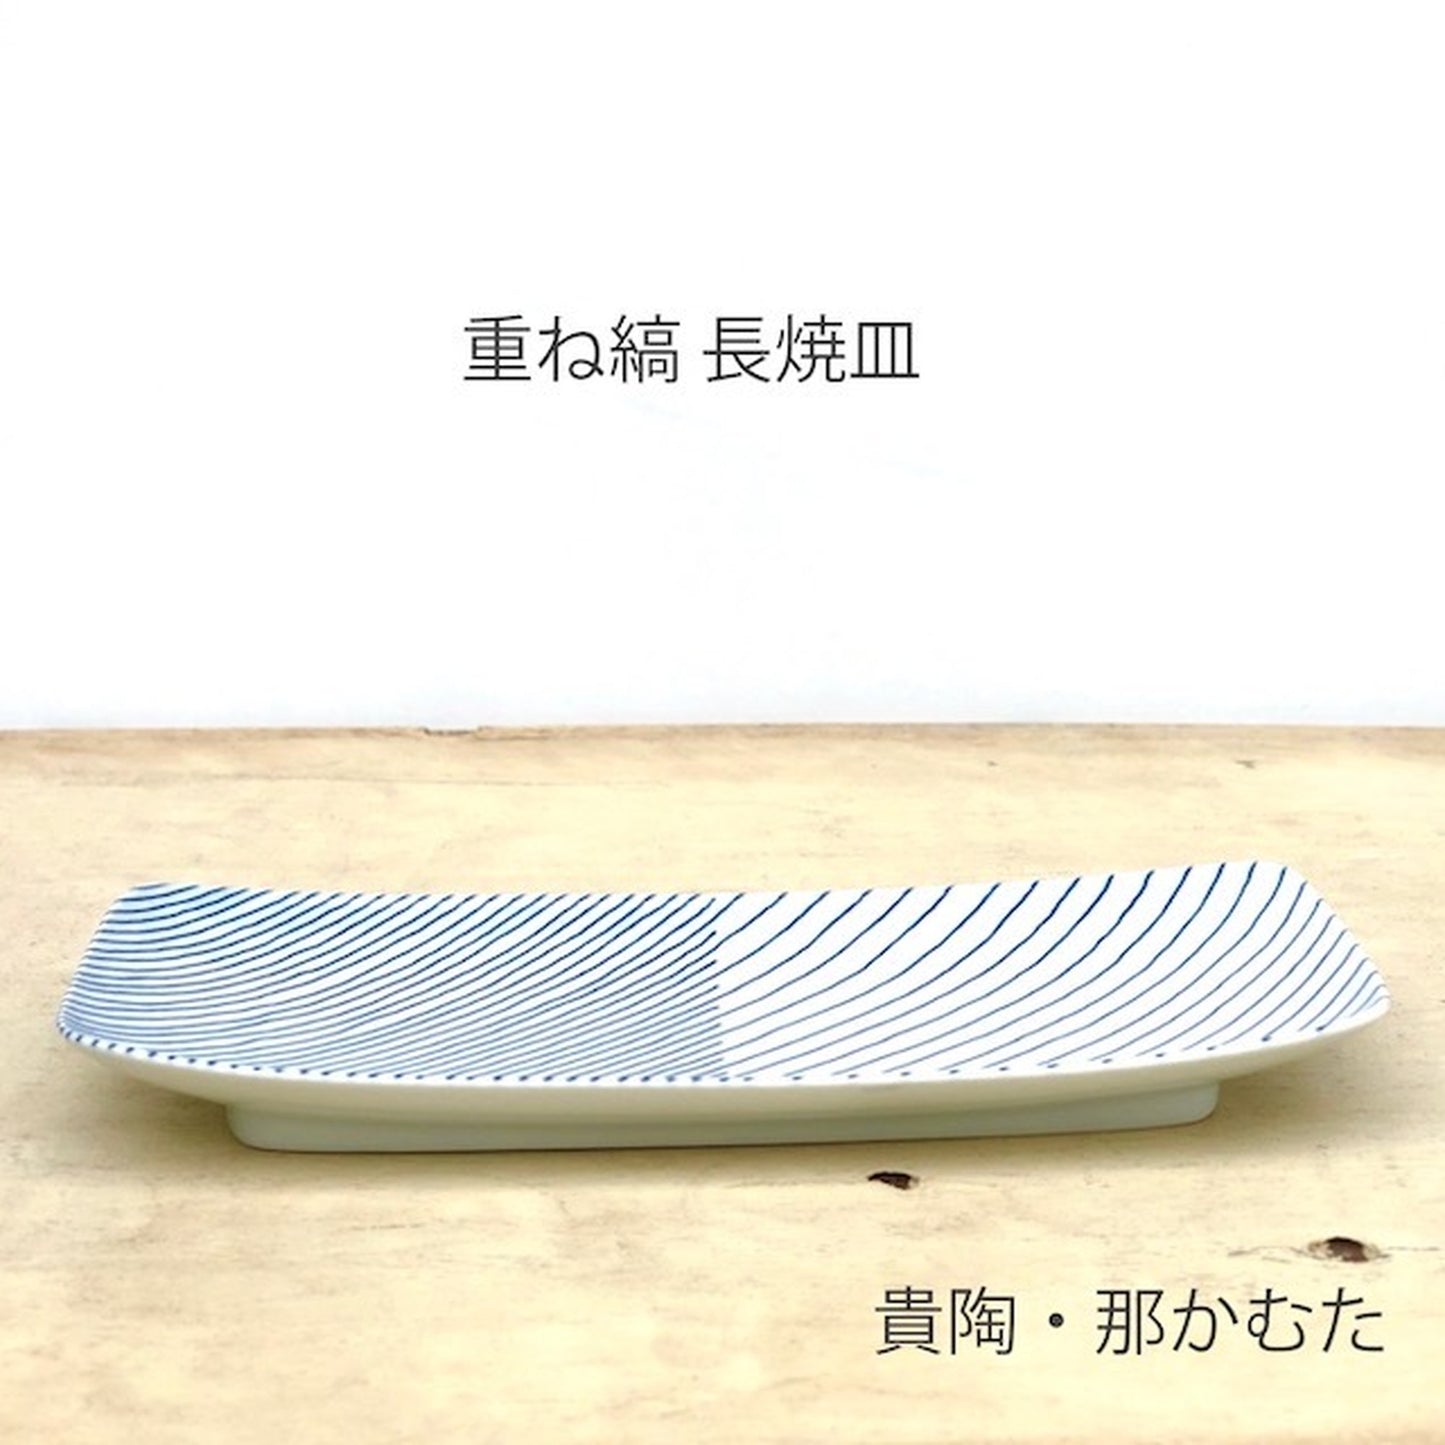 [波佐见烧] [白山陶器] [层叠条纹] [长烧盘] 长盘 长角盘 鱼盘 hakusan